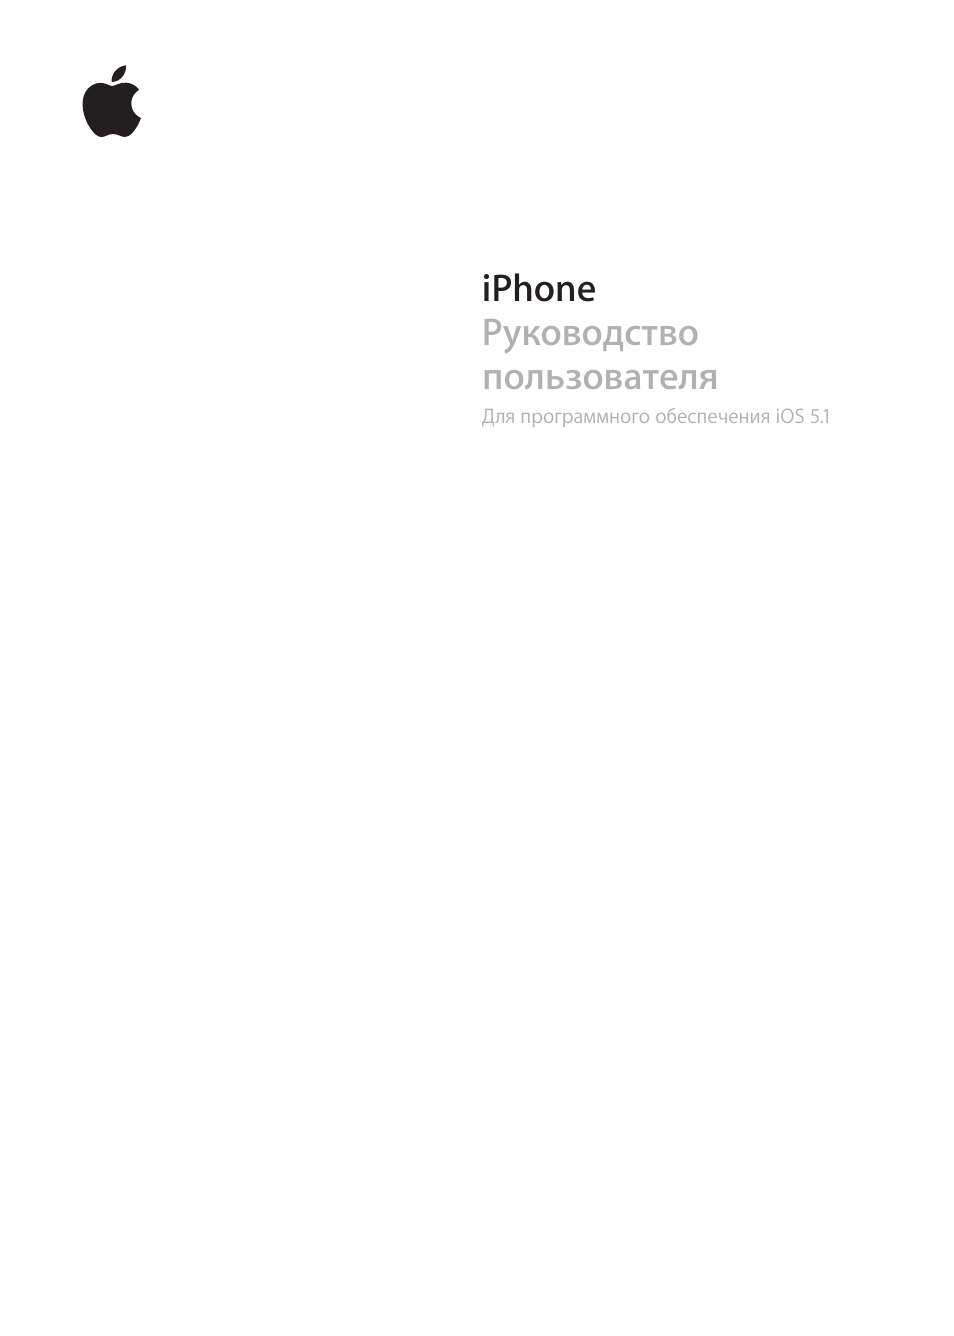 Инструкция по эксплуатации Apple iPhone iOS 5.1 | 204 страницы